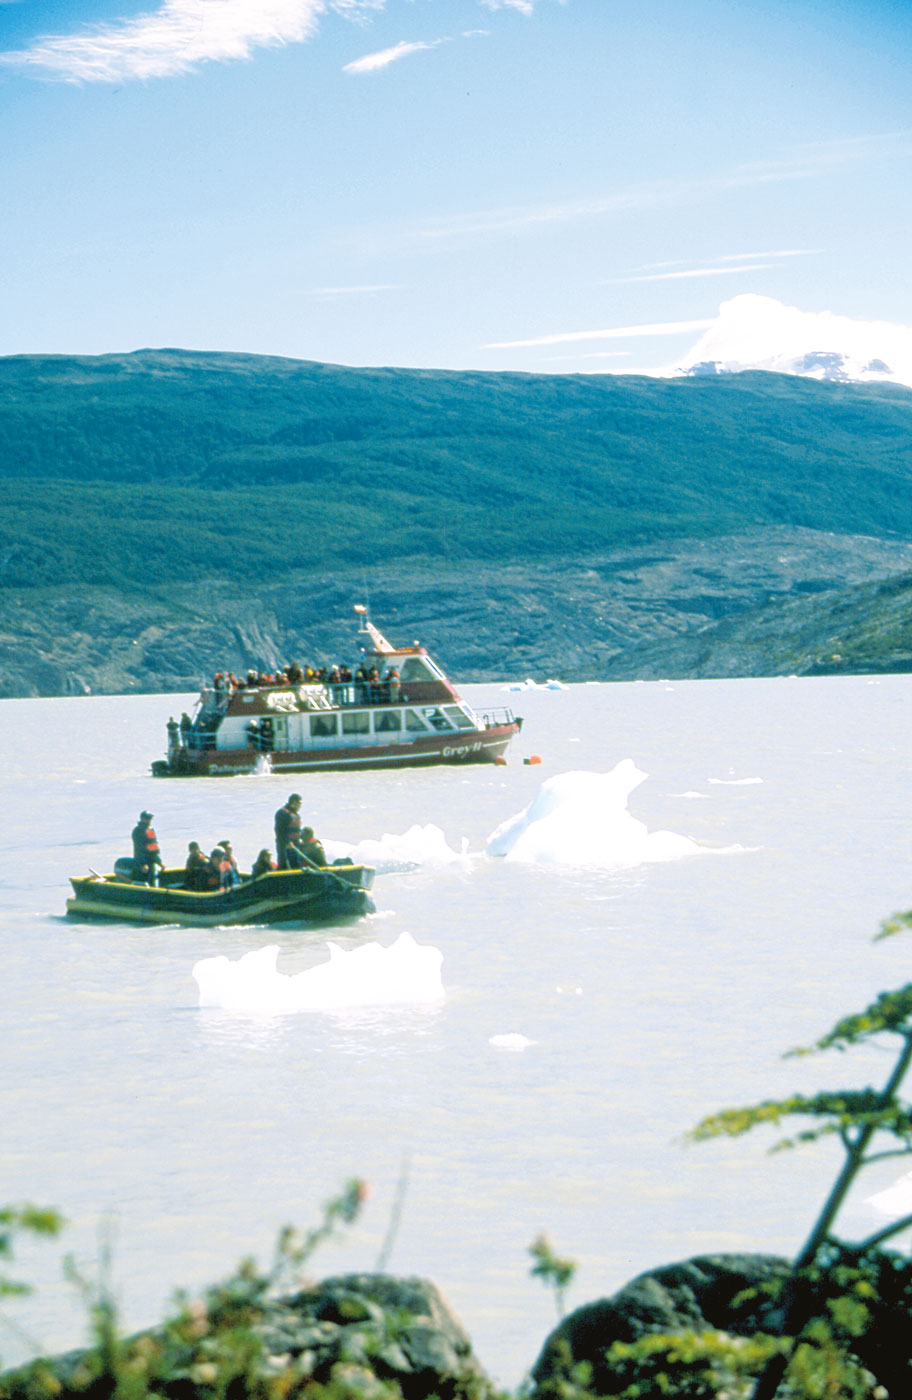 Le bateau qui permet d'accéder au glacier, le "Grey II", appartient à l'Hosteria Lago Grey.